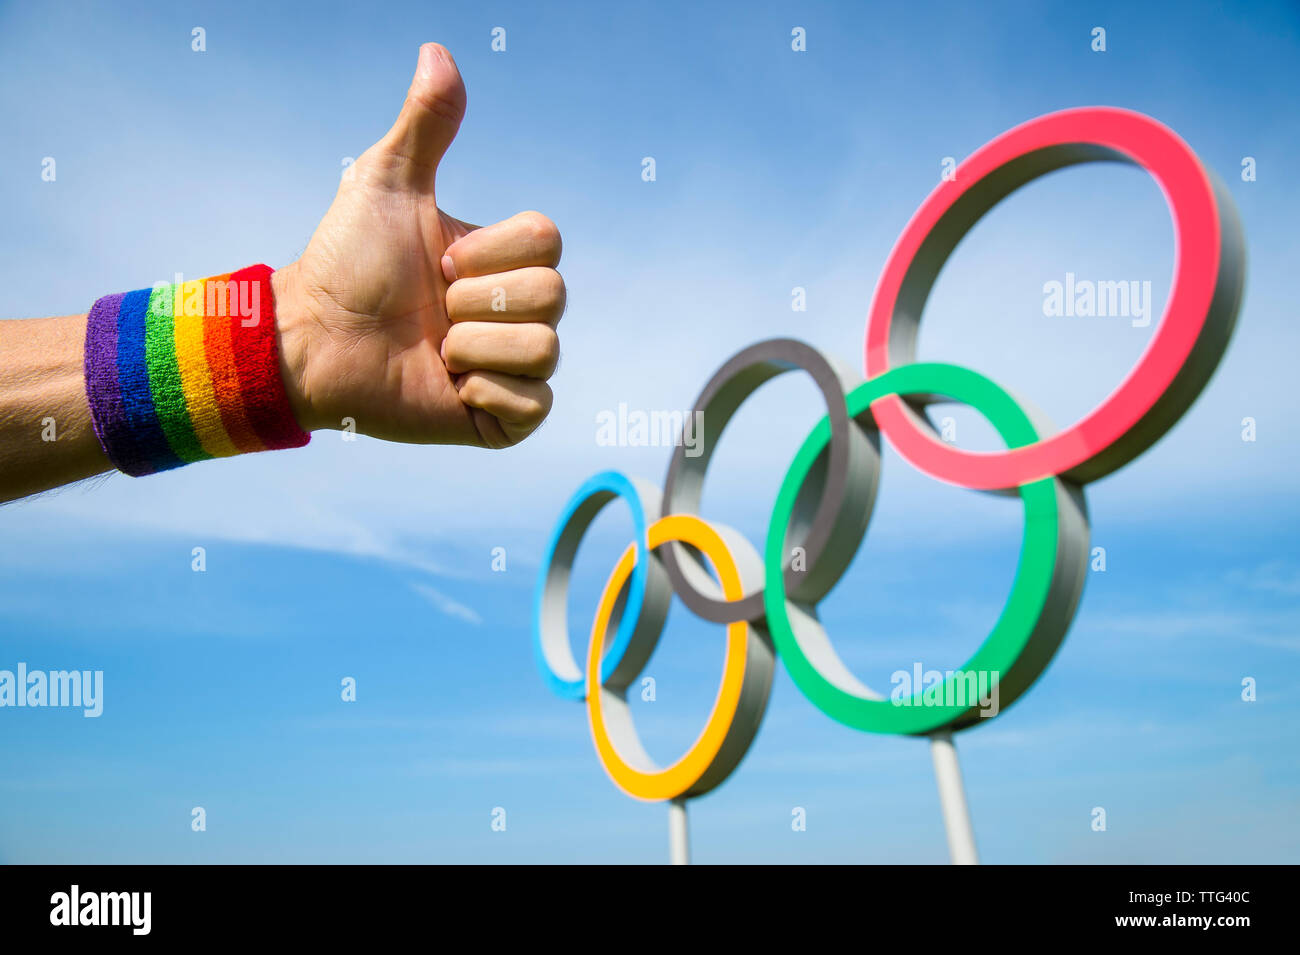 Londres - 4 mai 2019 : une main portant des gay pride rainbow bracelet de couleur donne un geste thumbs-up en face d'Anneaux olympiques en bleu ciel. Banque D'Images